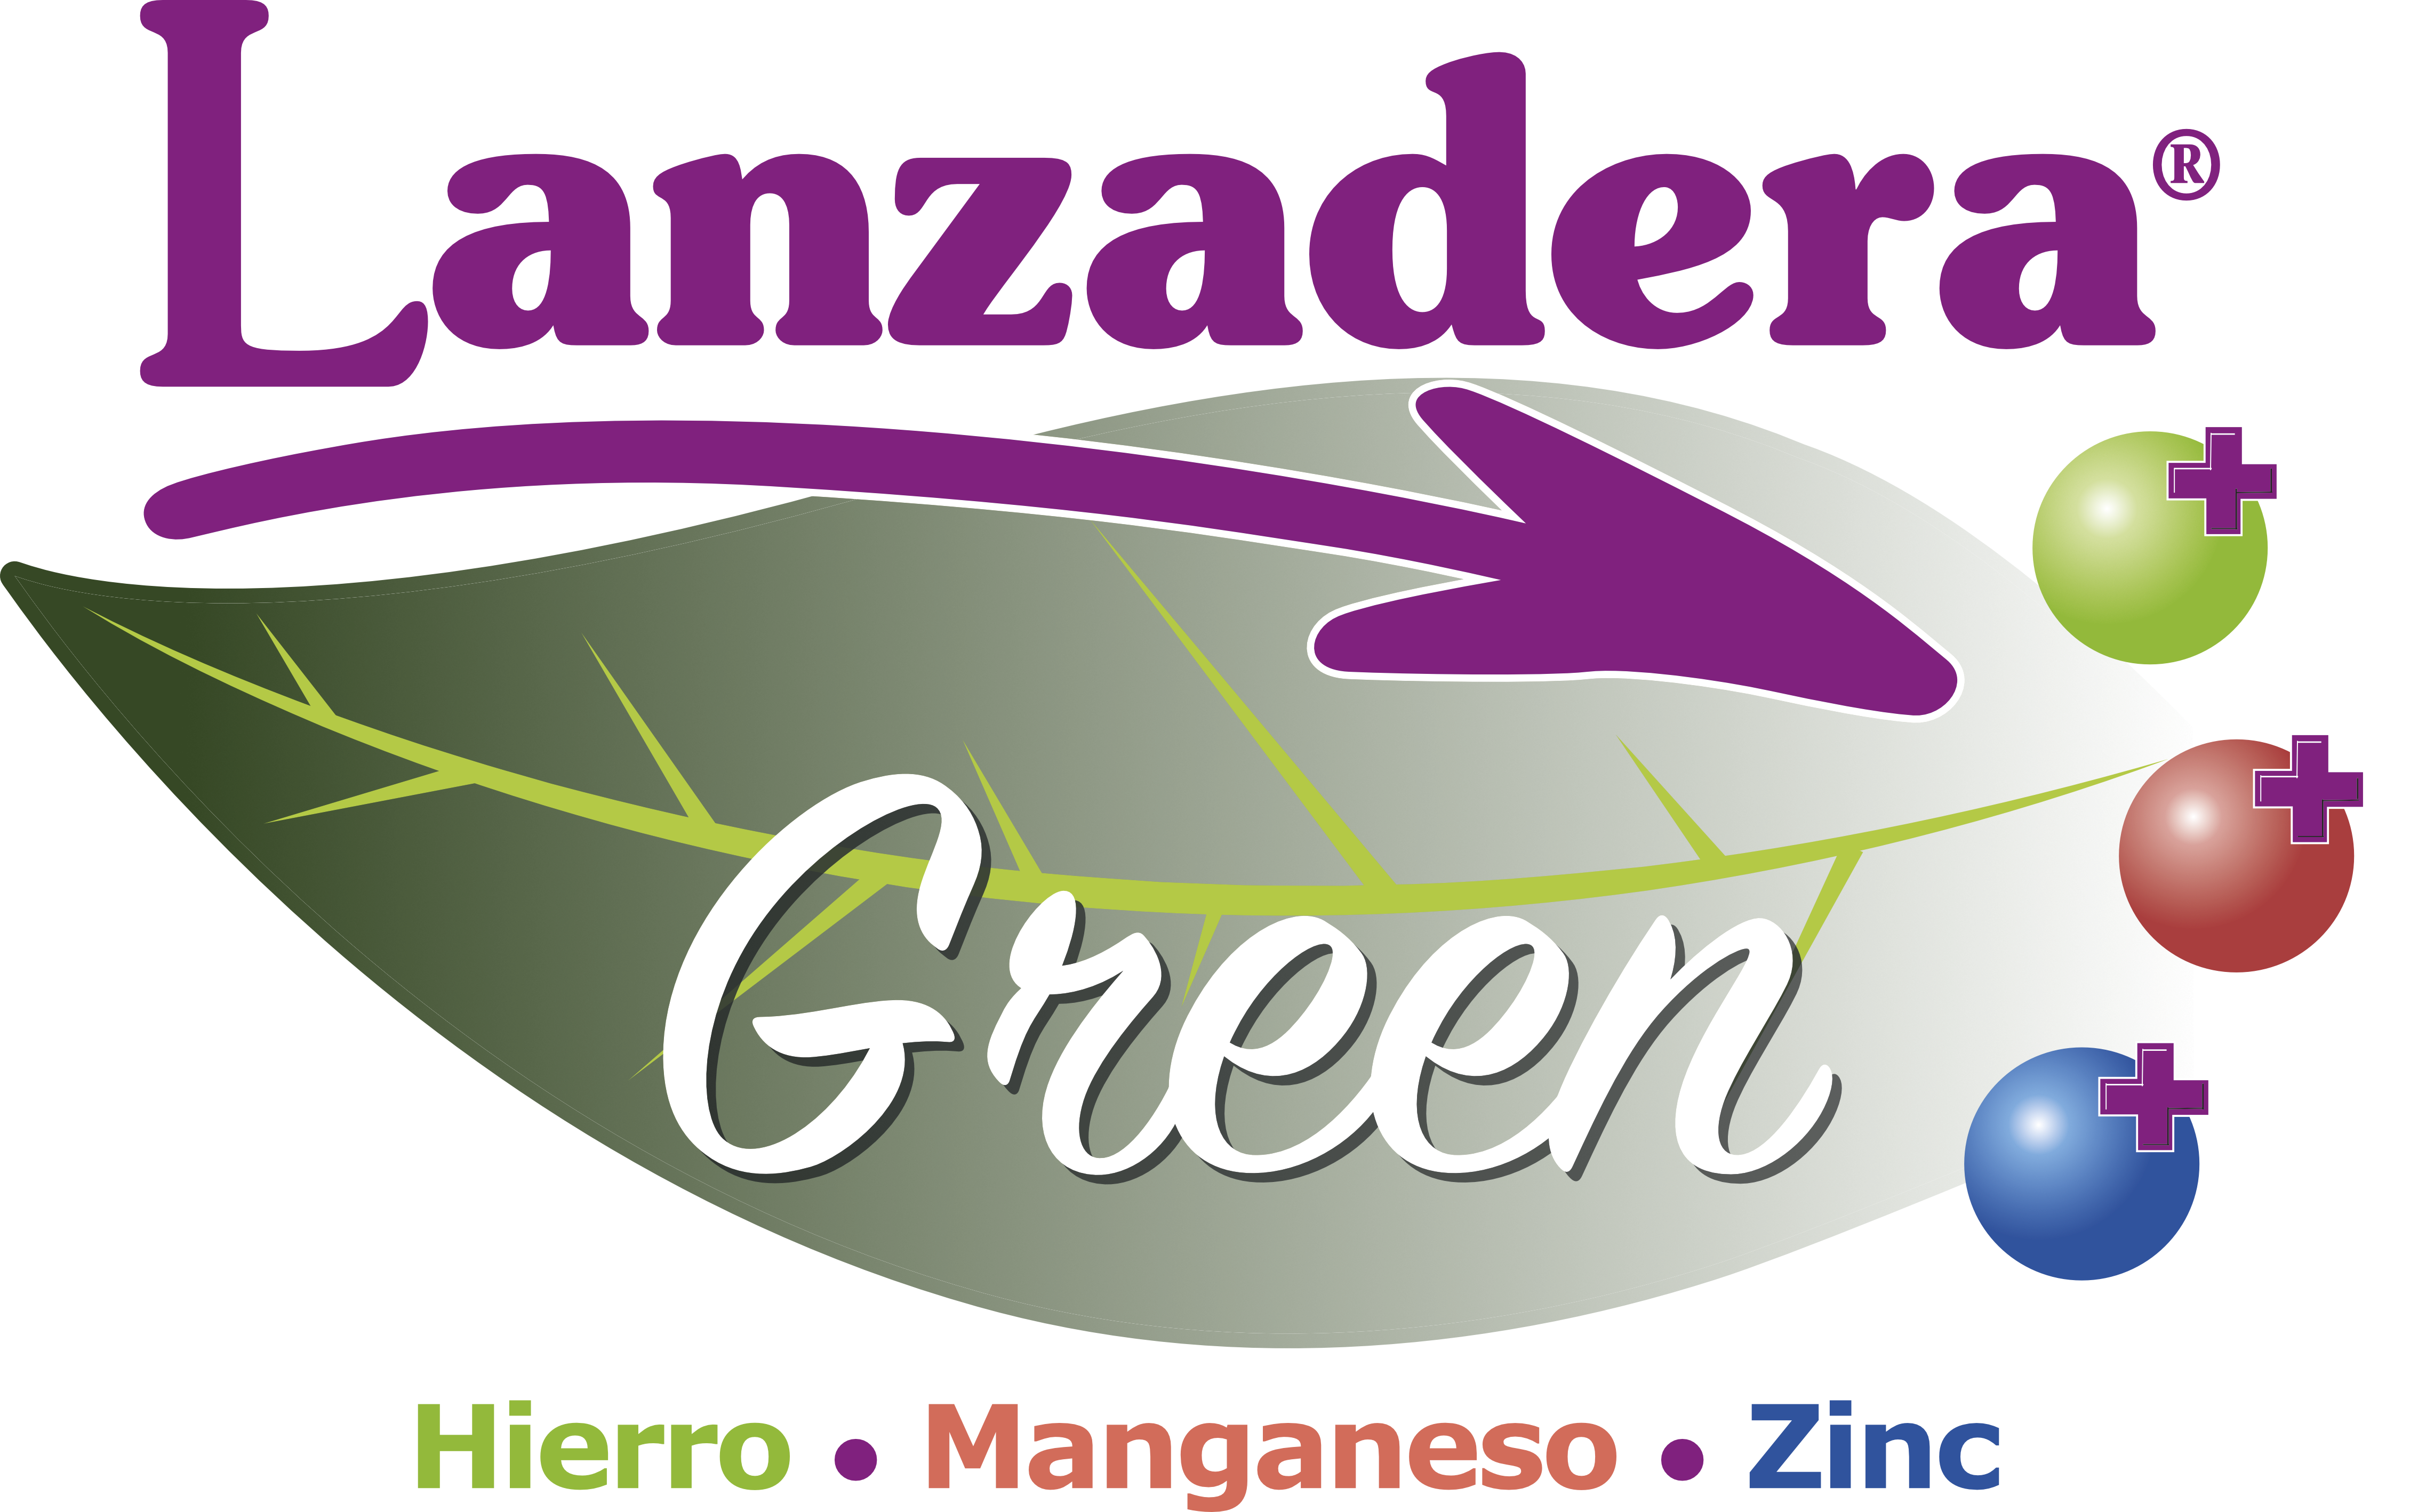 Lanzadera green